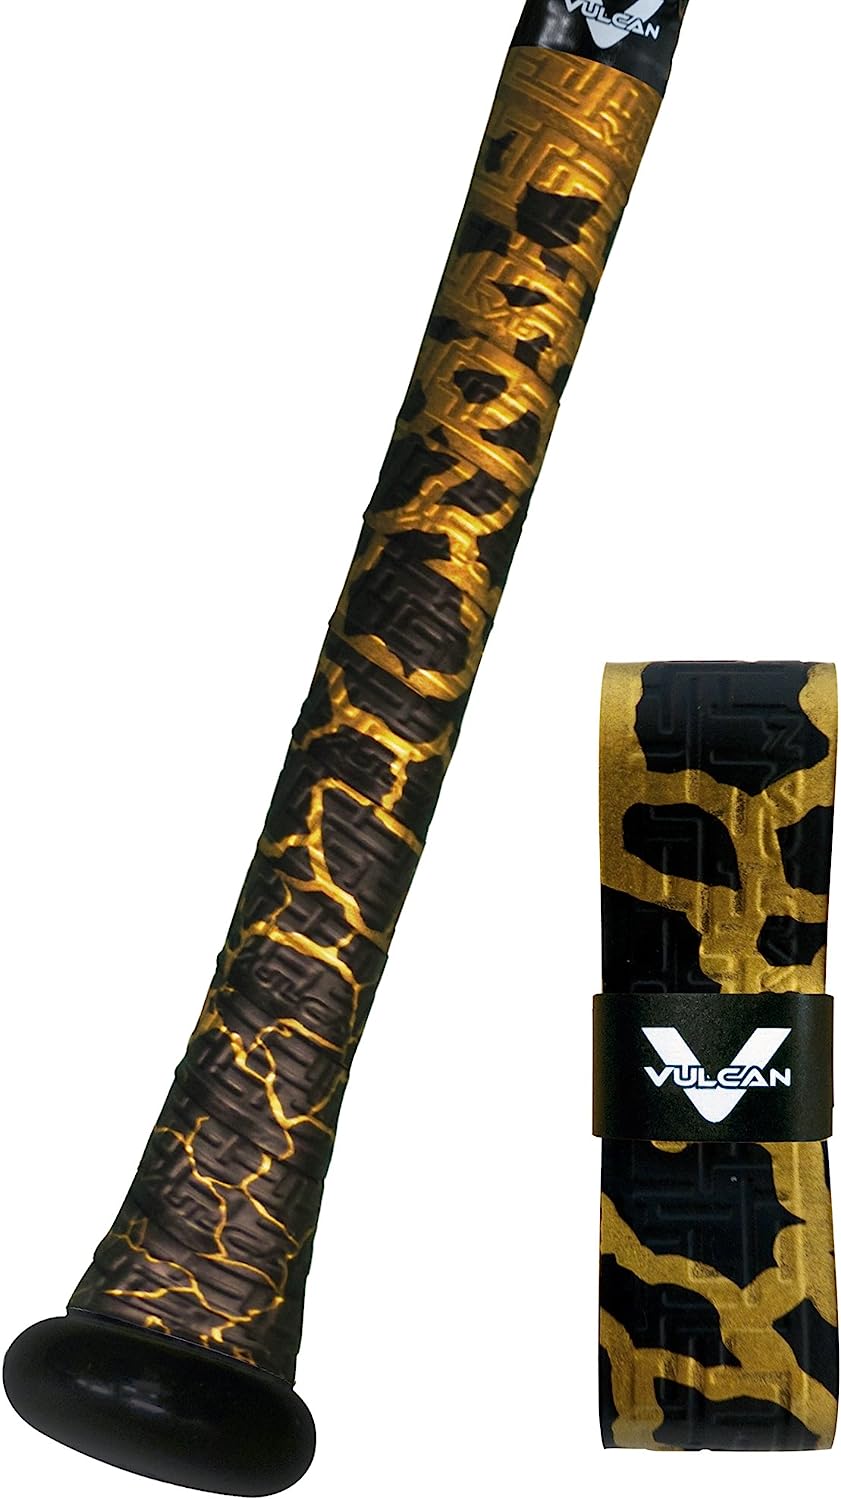 Vulcan Bat Grip, Vulcan 1.75mm Bat Grip, Breaking Gold